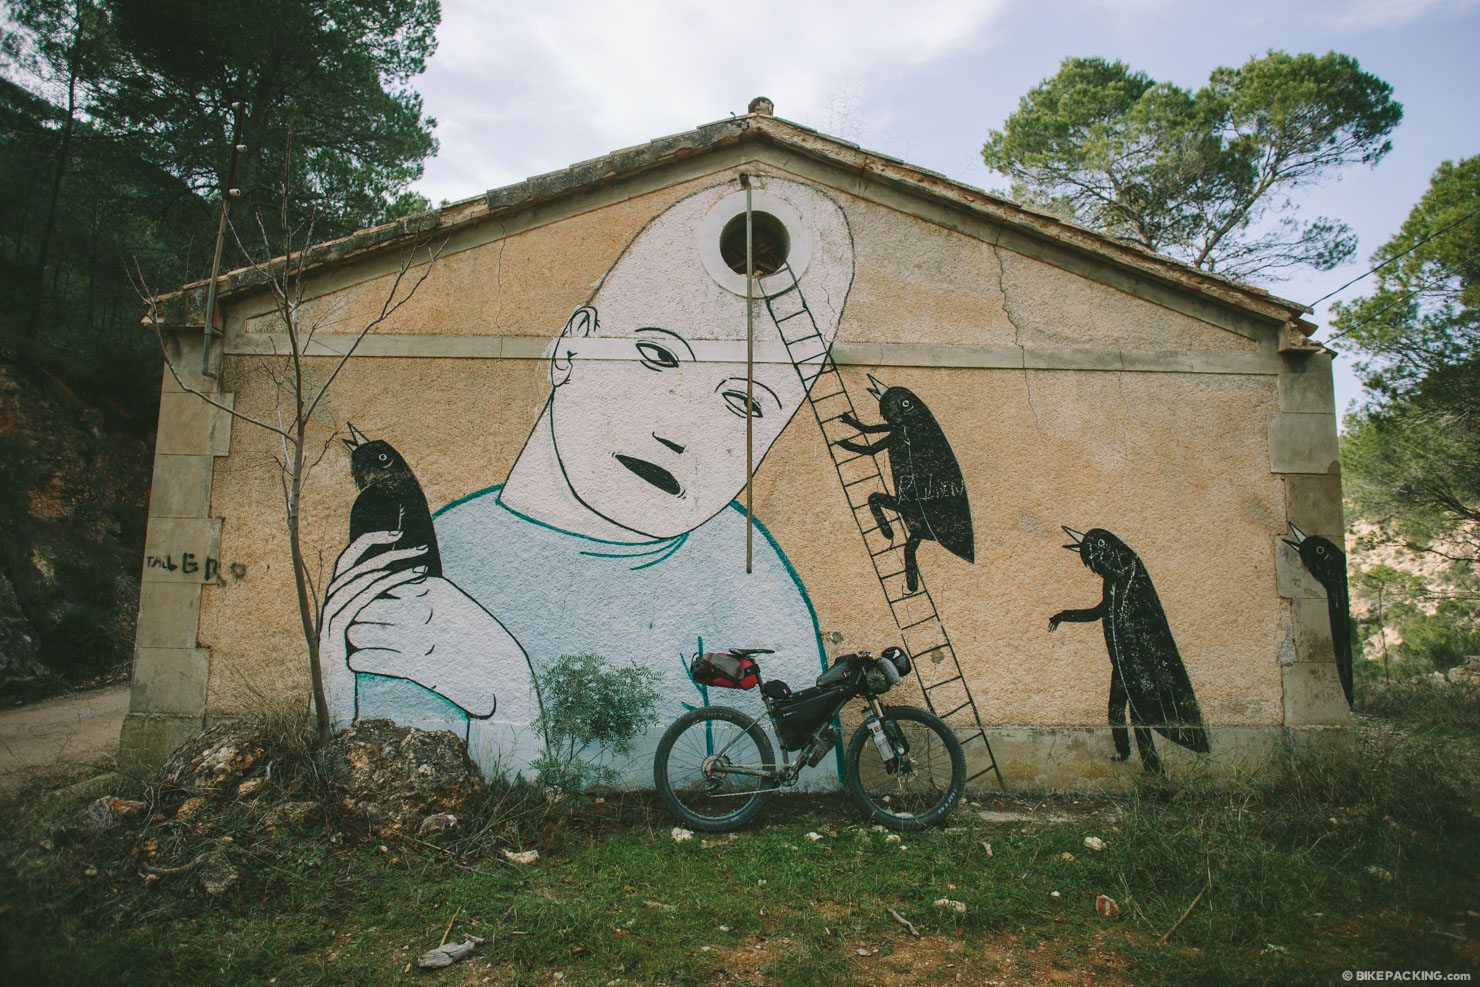 Bikepacking Rio Jucar, Graffiti